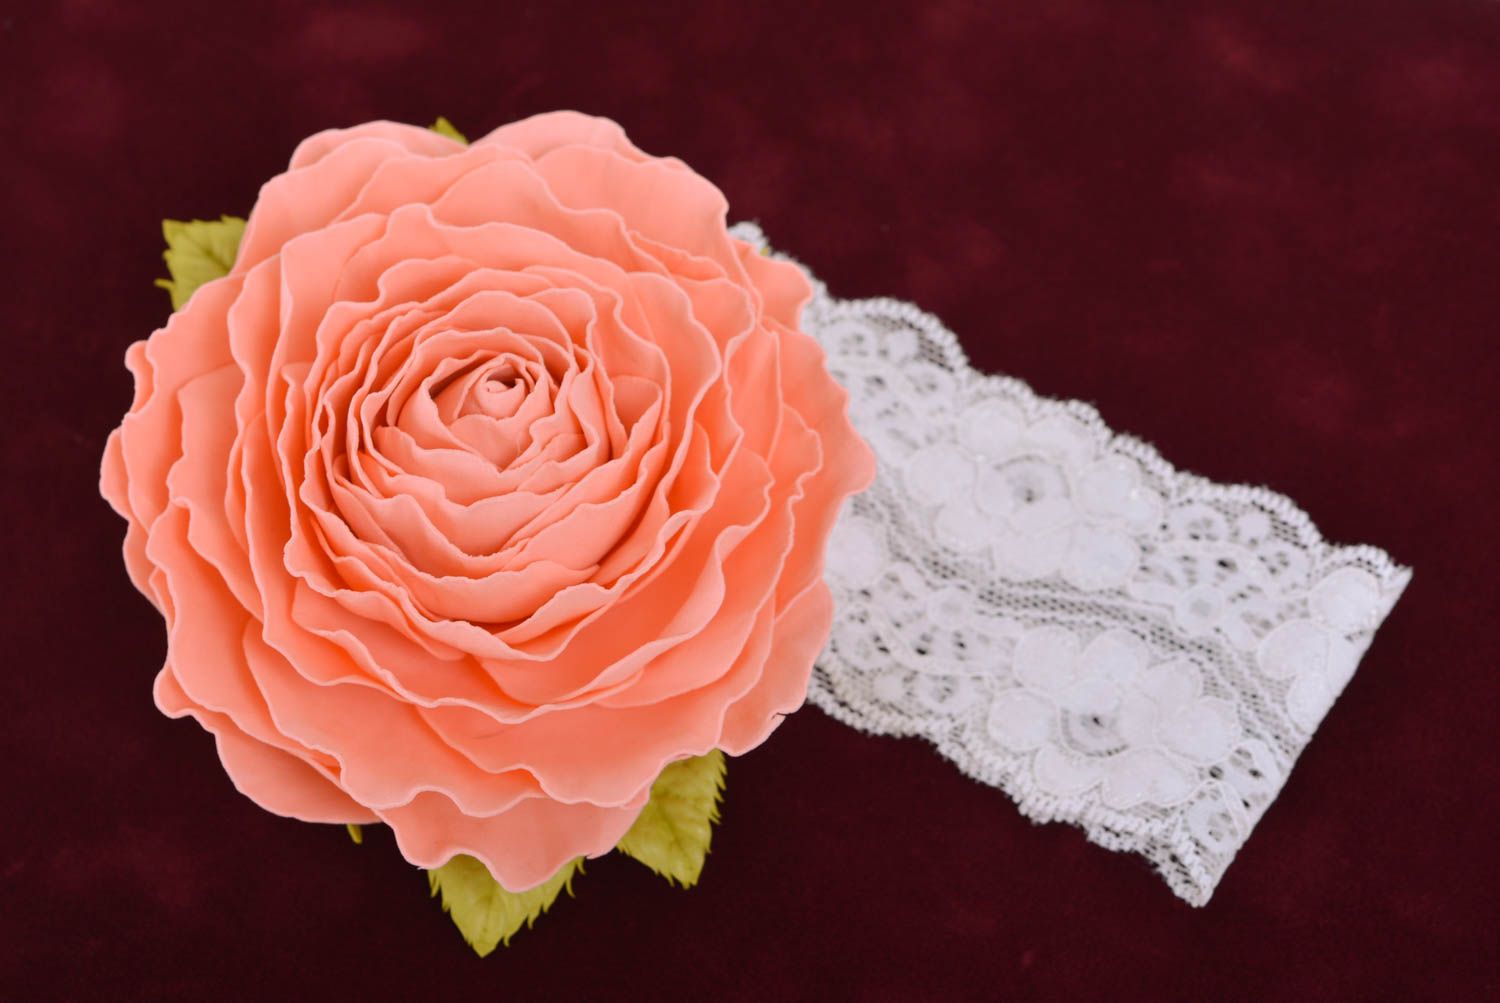 Красивая кружевная повязка на голову с цветком розы из фоамирана аксессуар ручной работы фото 1